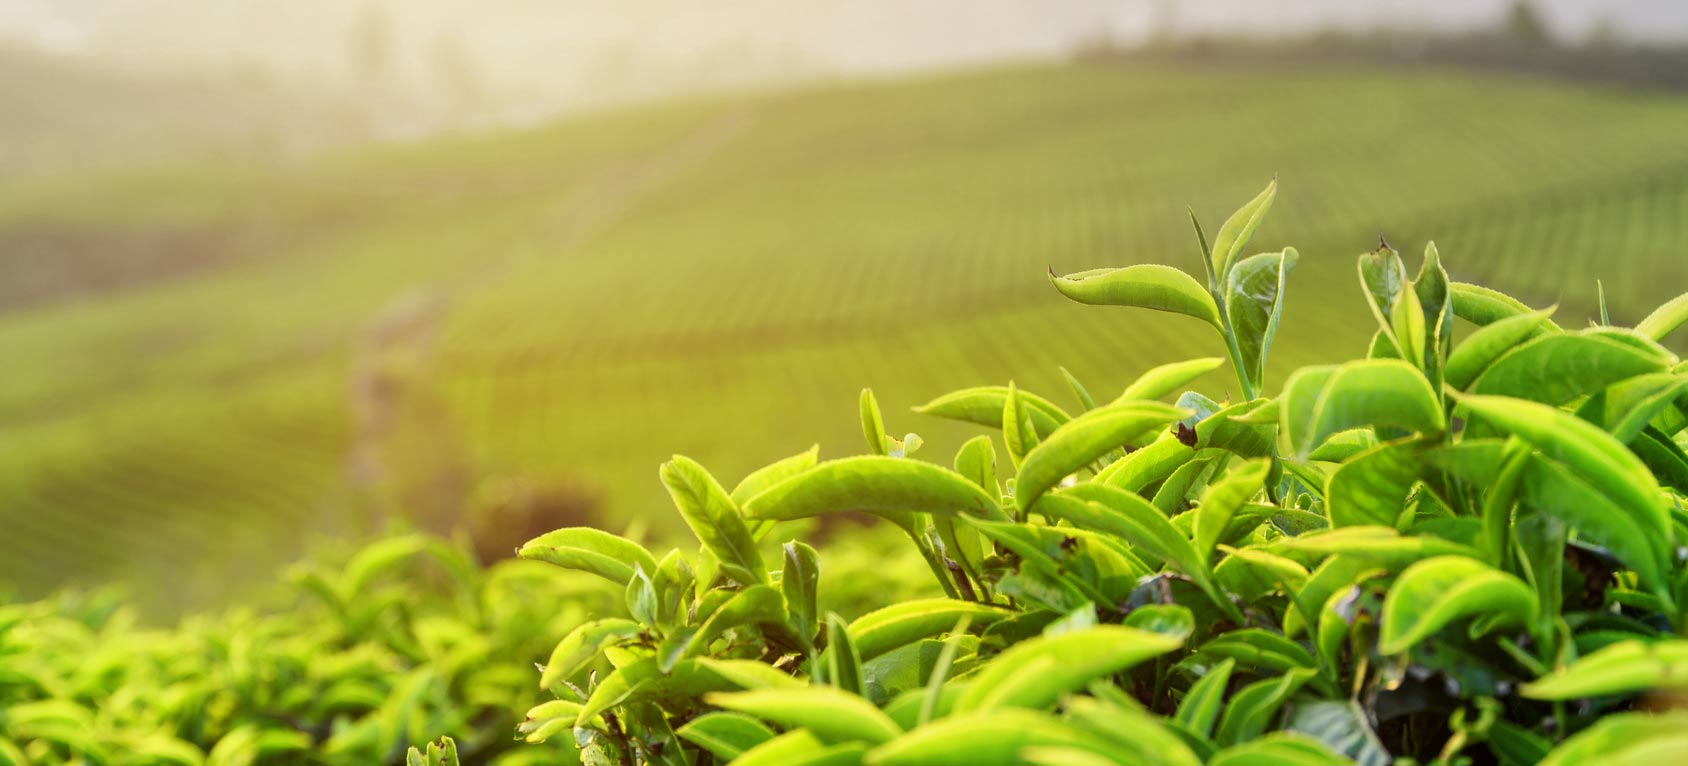 Komponenten im grünen Tee mögliche Therapieoption gegen Krebs